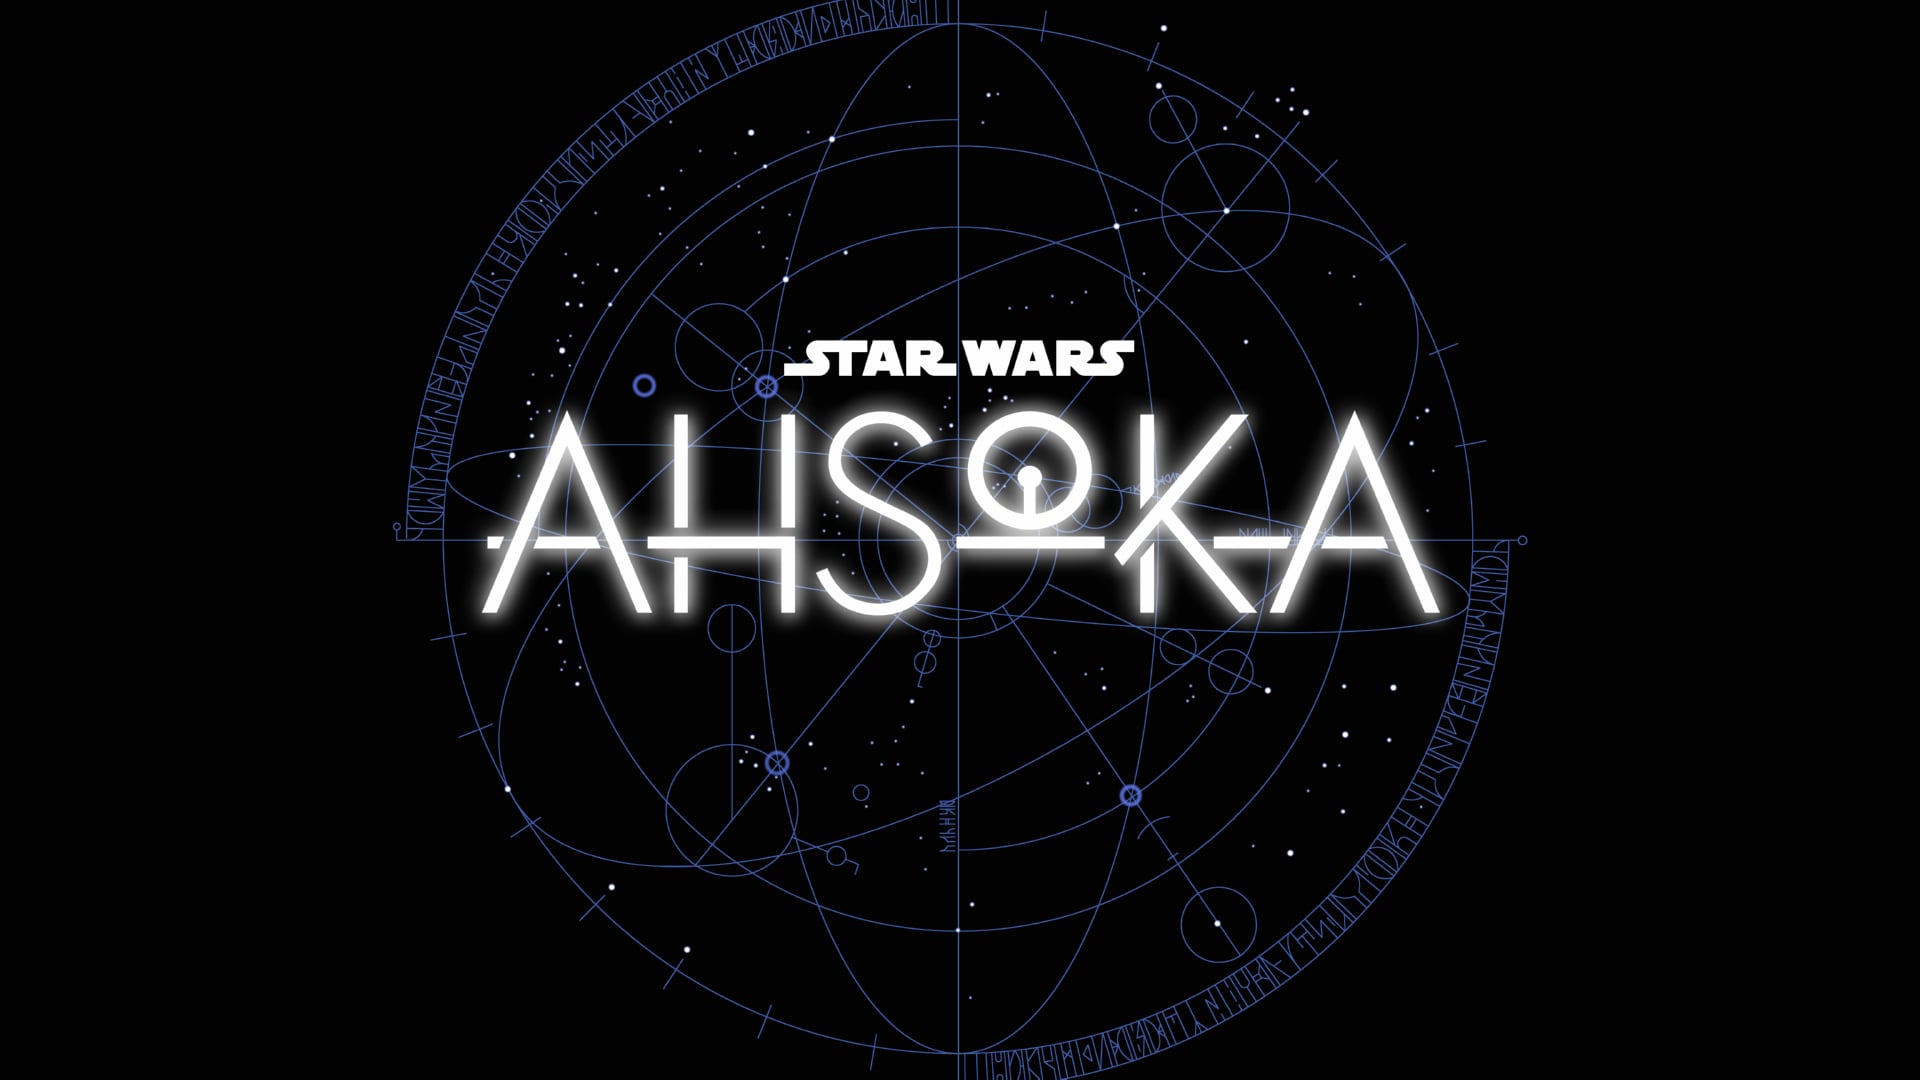 Digital Art Star Wars Ahsoka at 640 x 1136 iPhone 5 size wallpapers HD quality